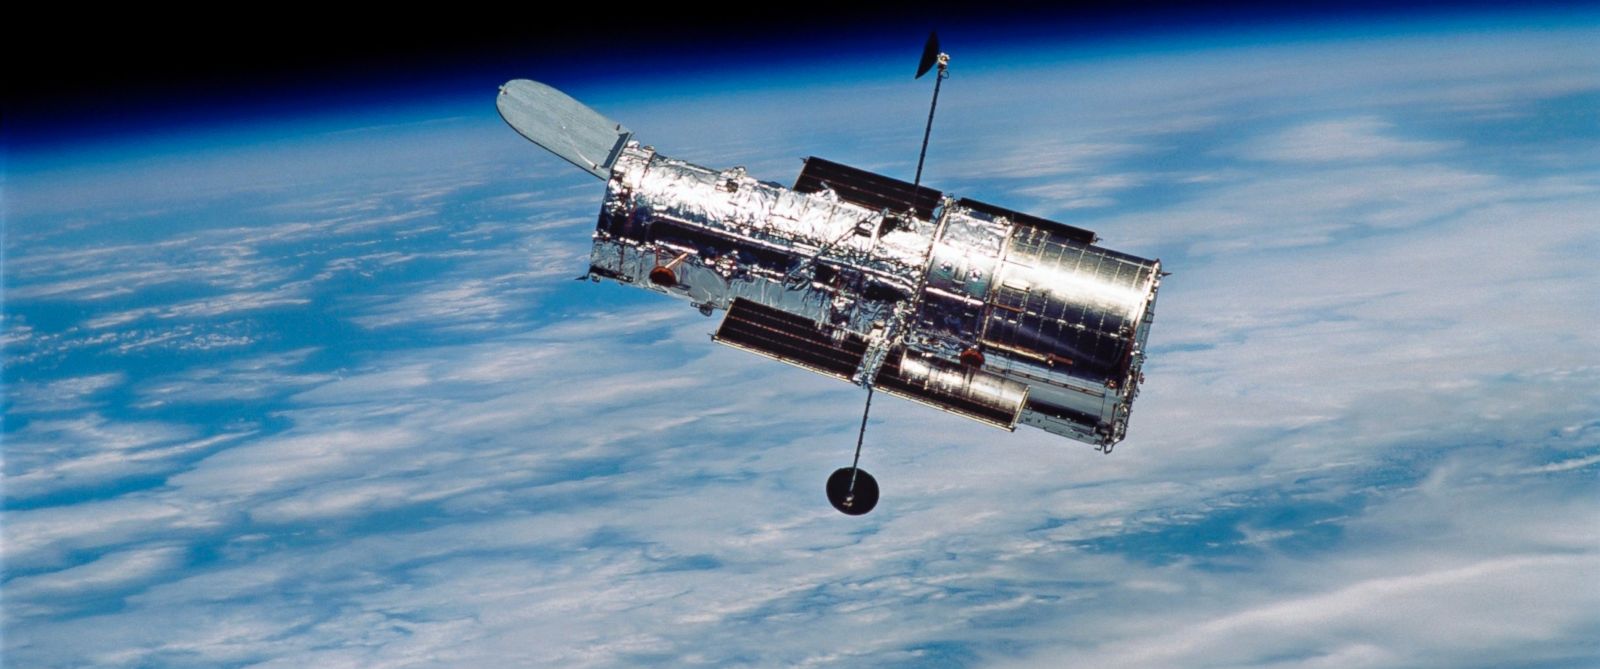 नासा ने डिजाइन को मंजूरी दे दी की एक 30-मीटर इकट्ठे अंतरिक्ष दूरबीन